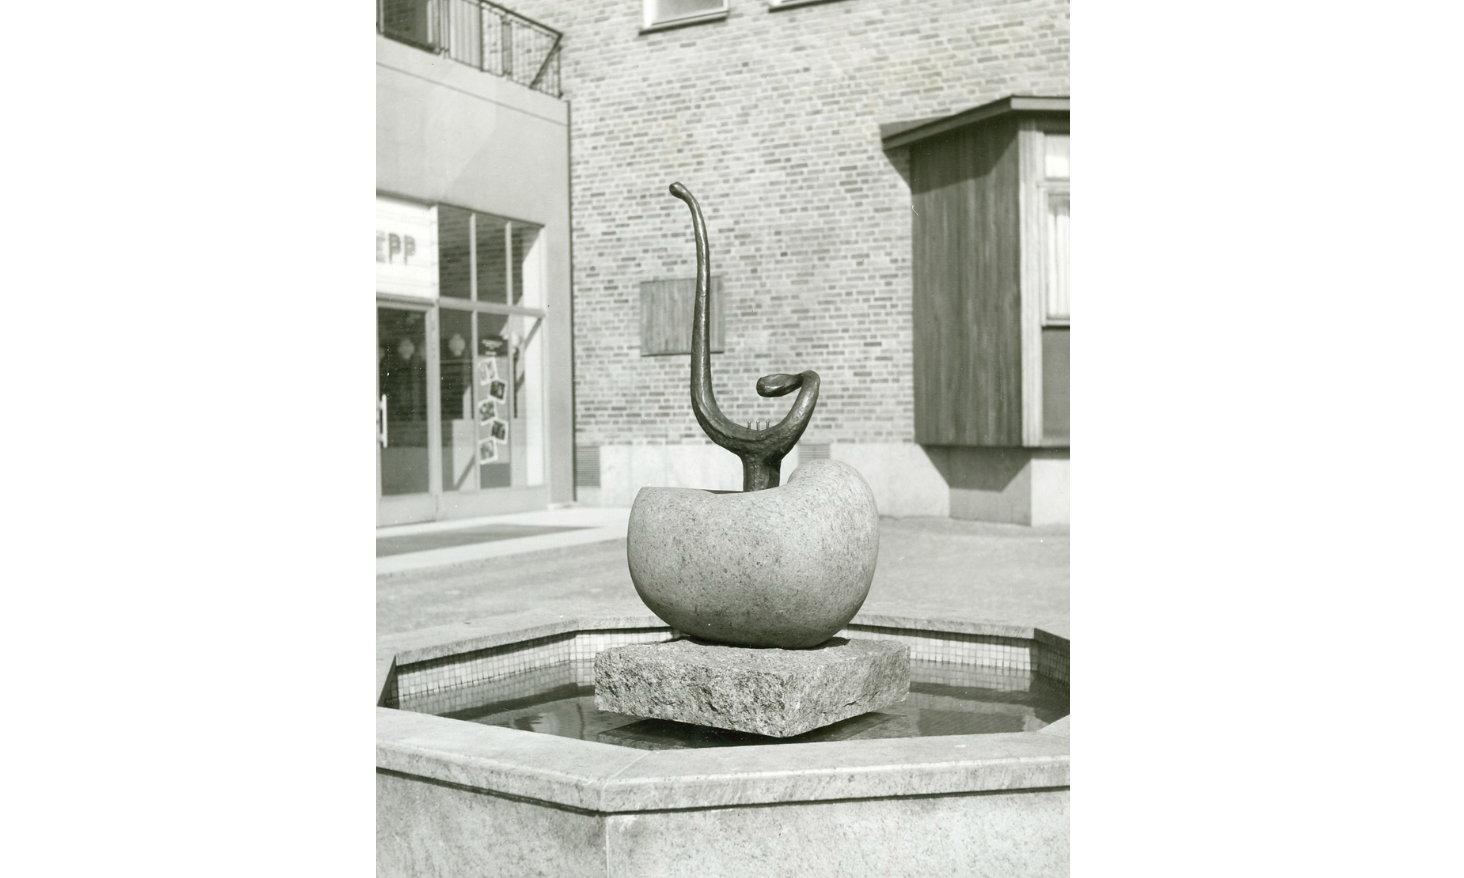 1956 placeras Bernard Anderssons skulptur ”Musikens källa” utanför Halmstads teater. Fontänen är en staty i form av en snäcka i röd granit och en självspelande lyra i brons. Tre vattenstrålar utgör strängar på lyran.